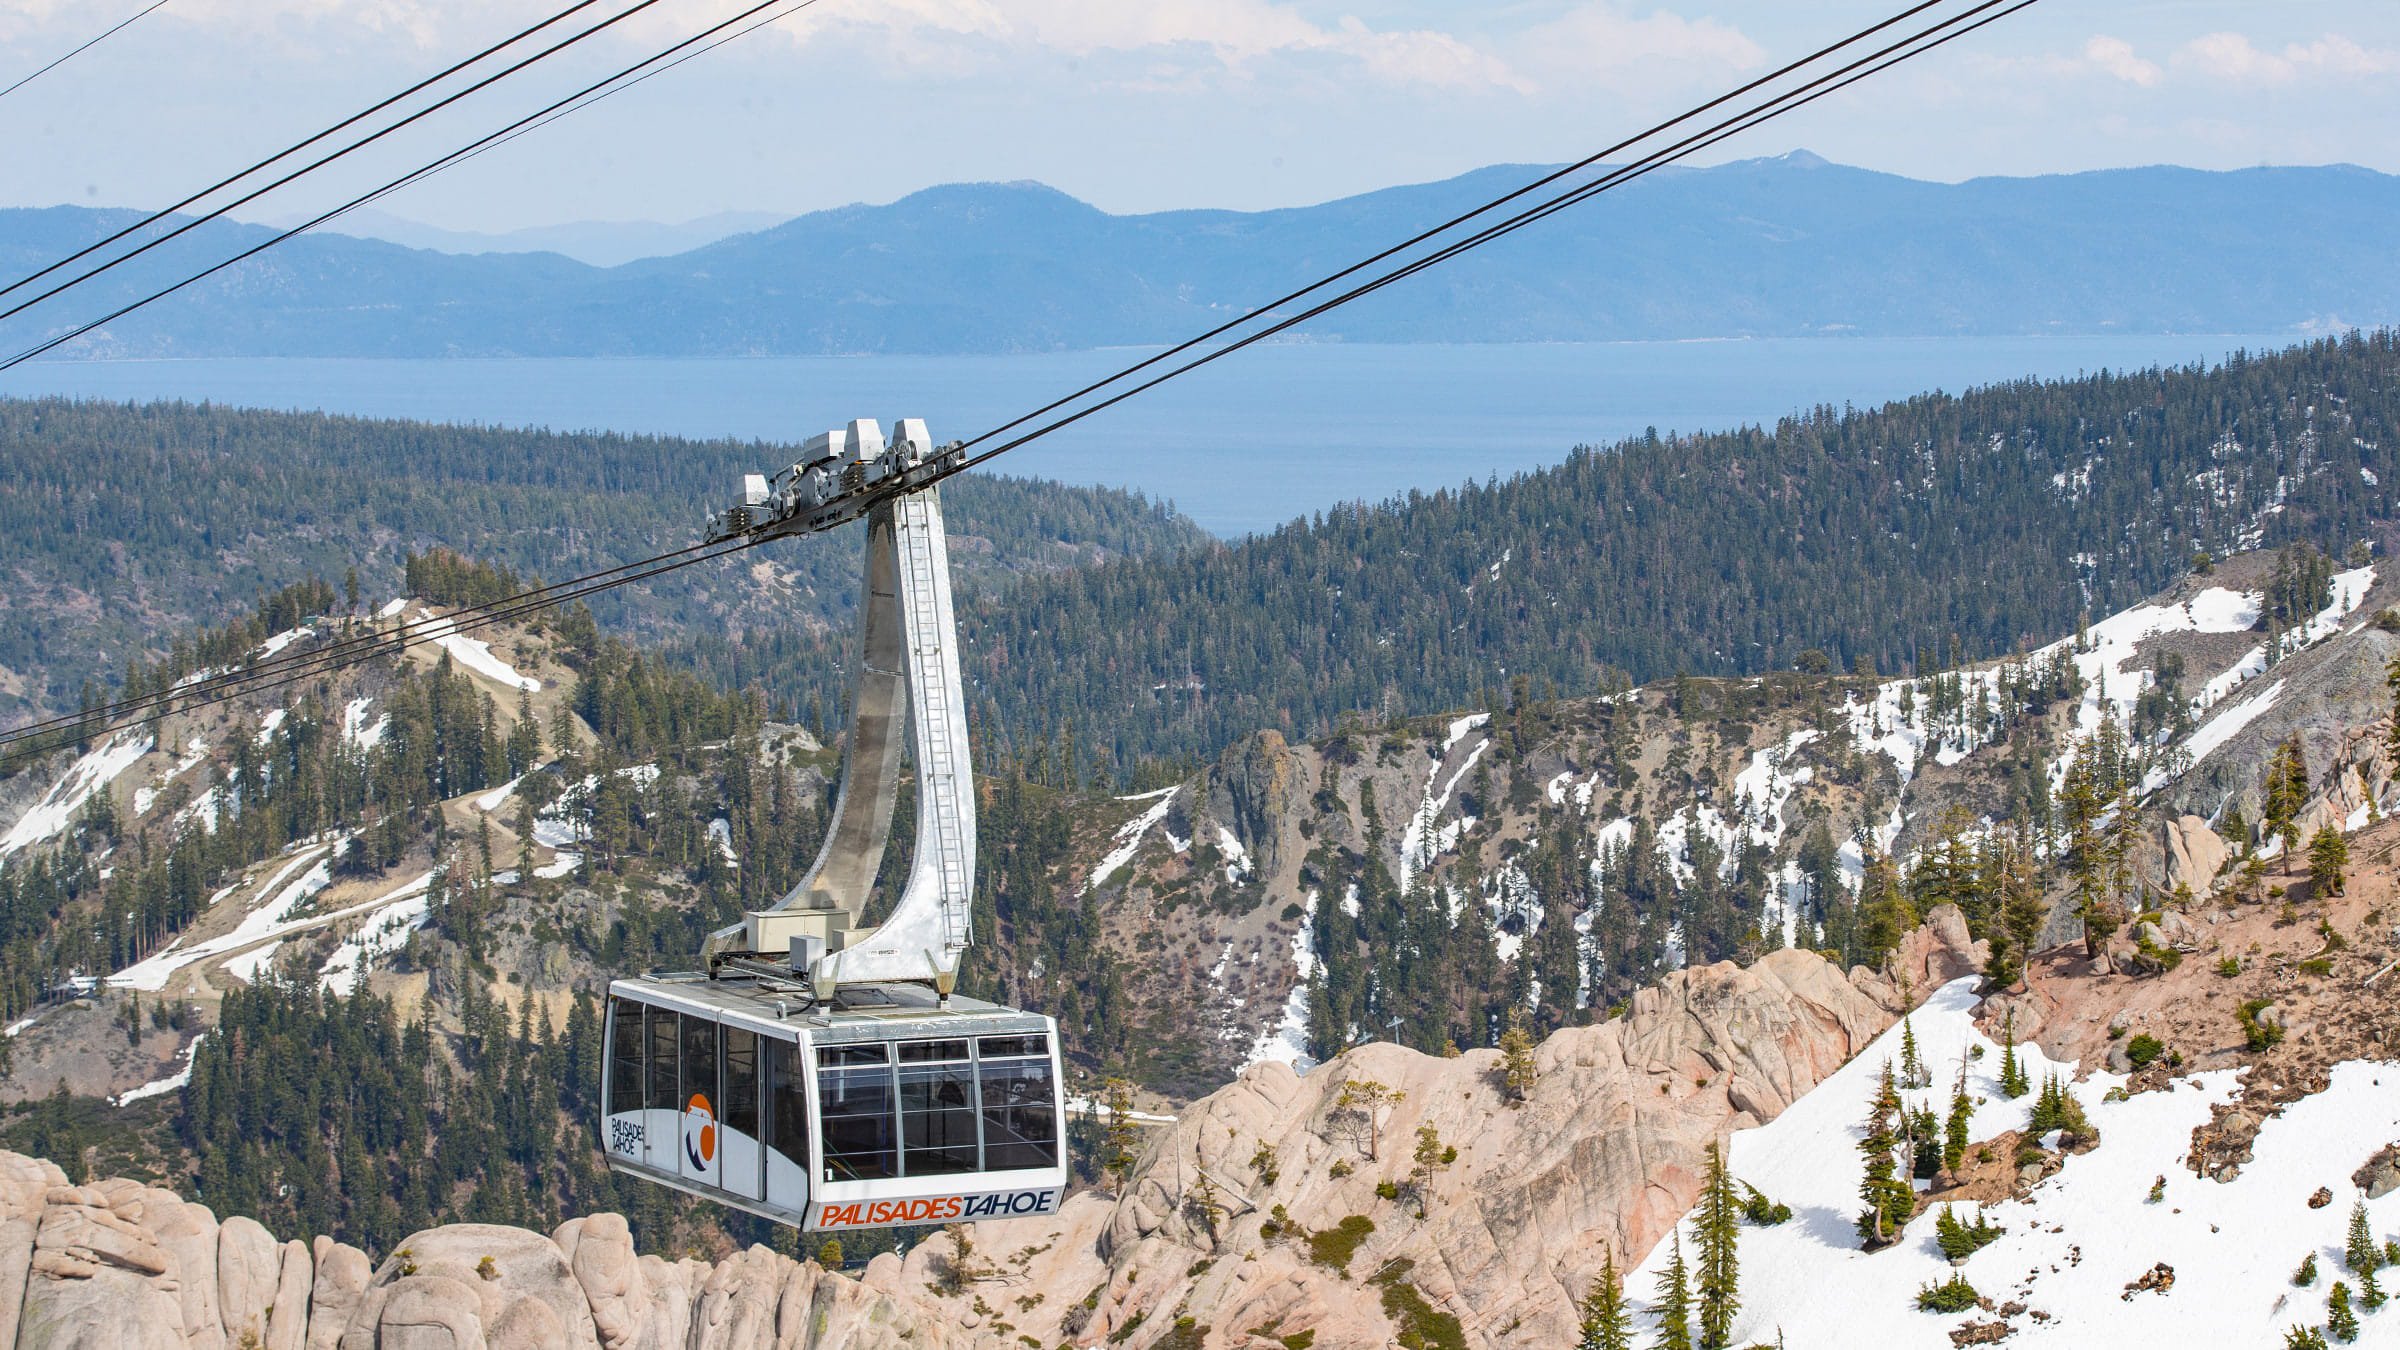 Palisades Tahoe Aerial Tram in May rising above granite rocks with views of Lake Tahoe